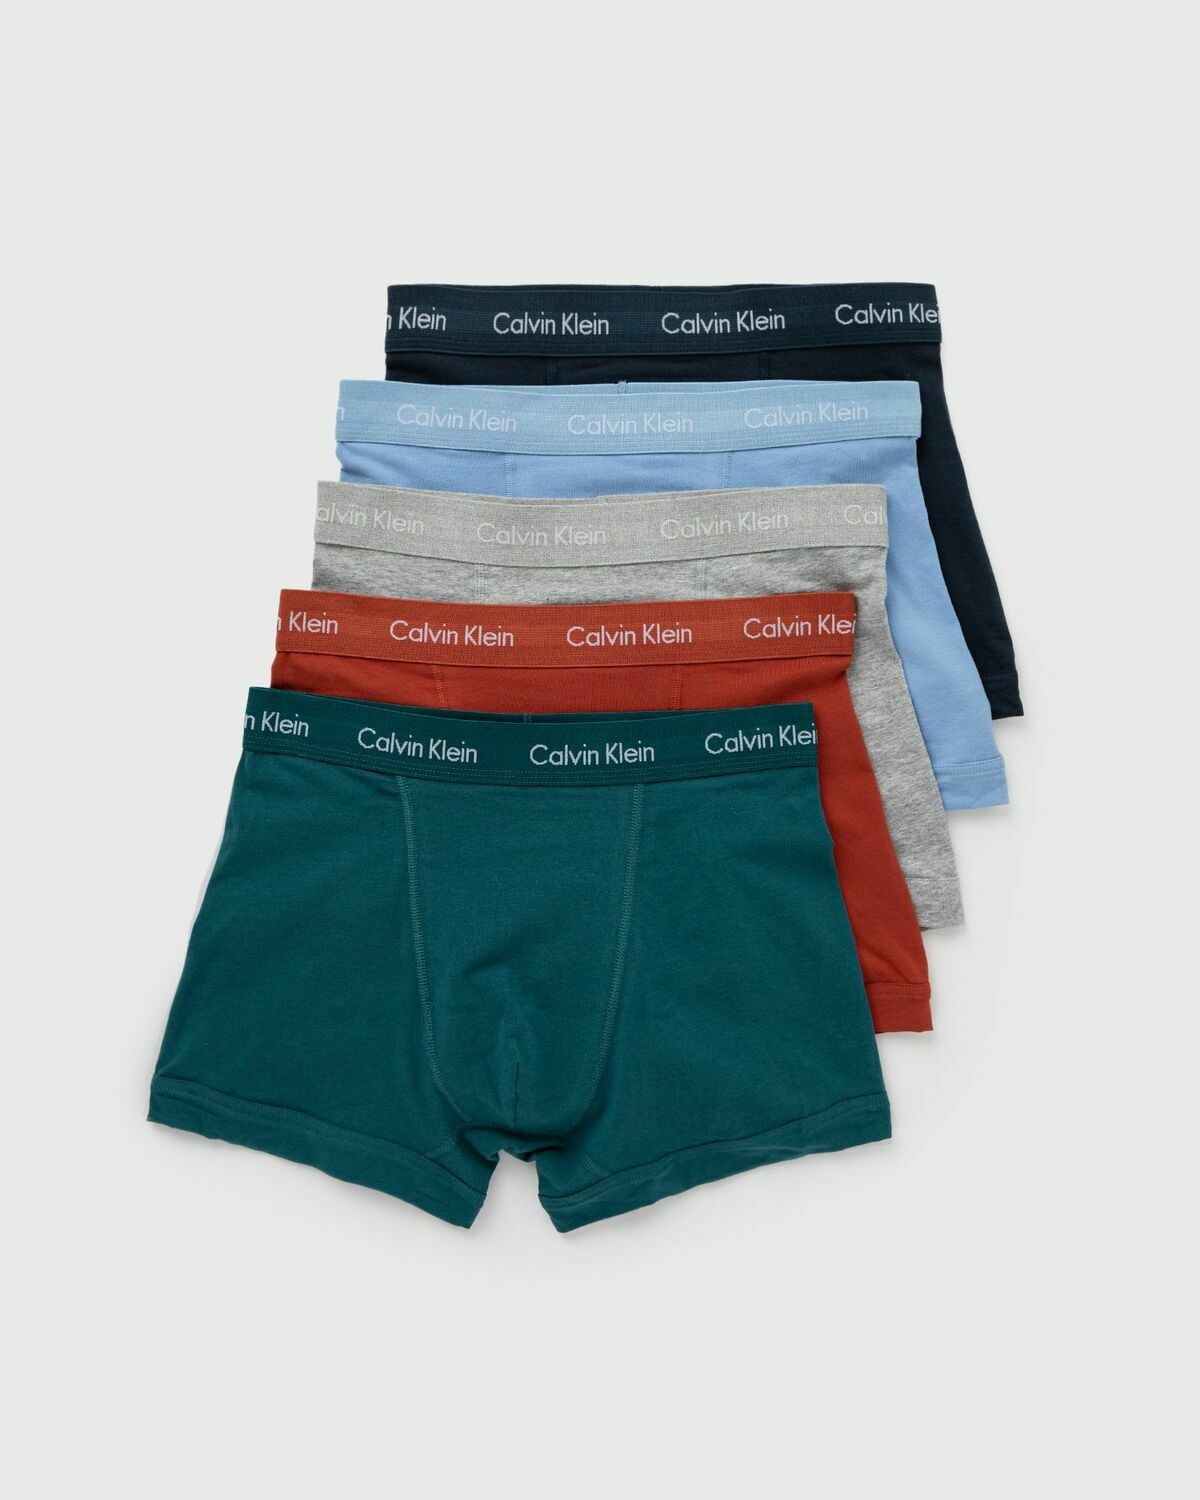 Blue Pack of three cotton-blend boxer briefs, Calvin Klein Underwear